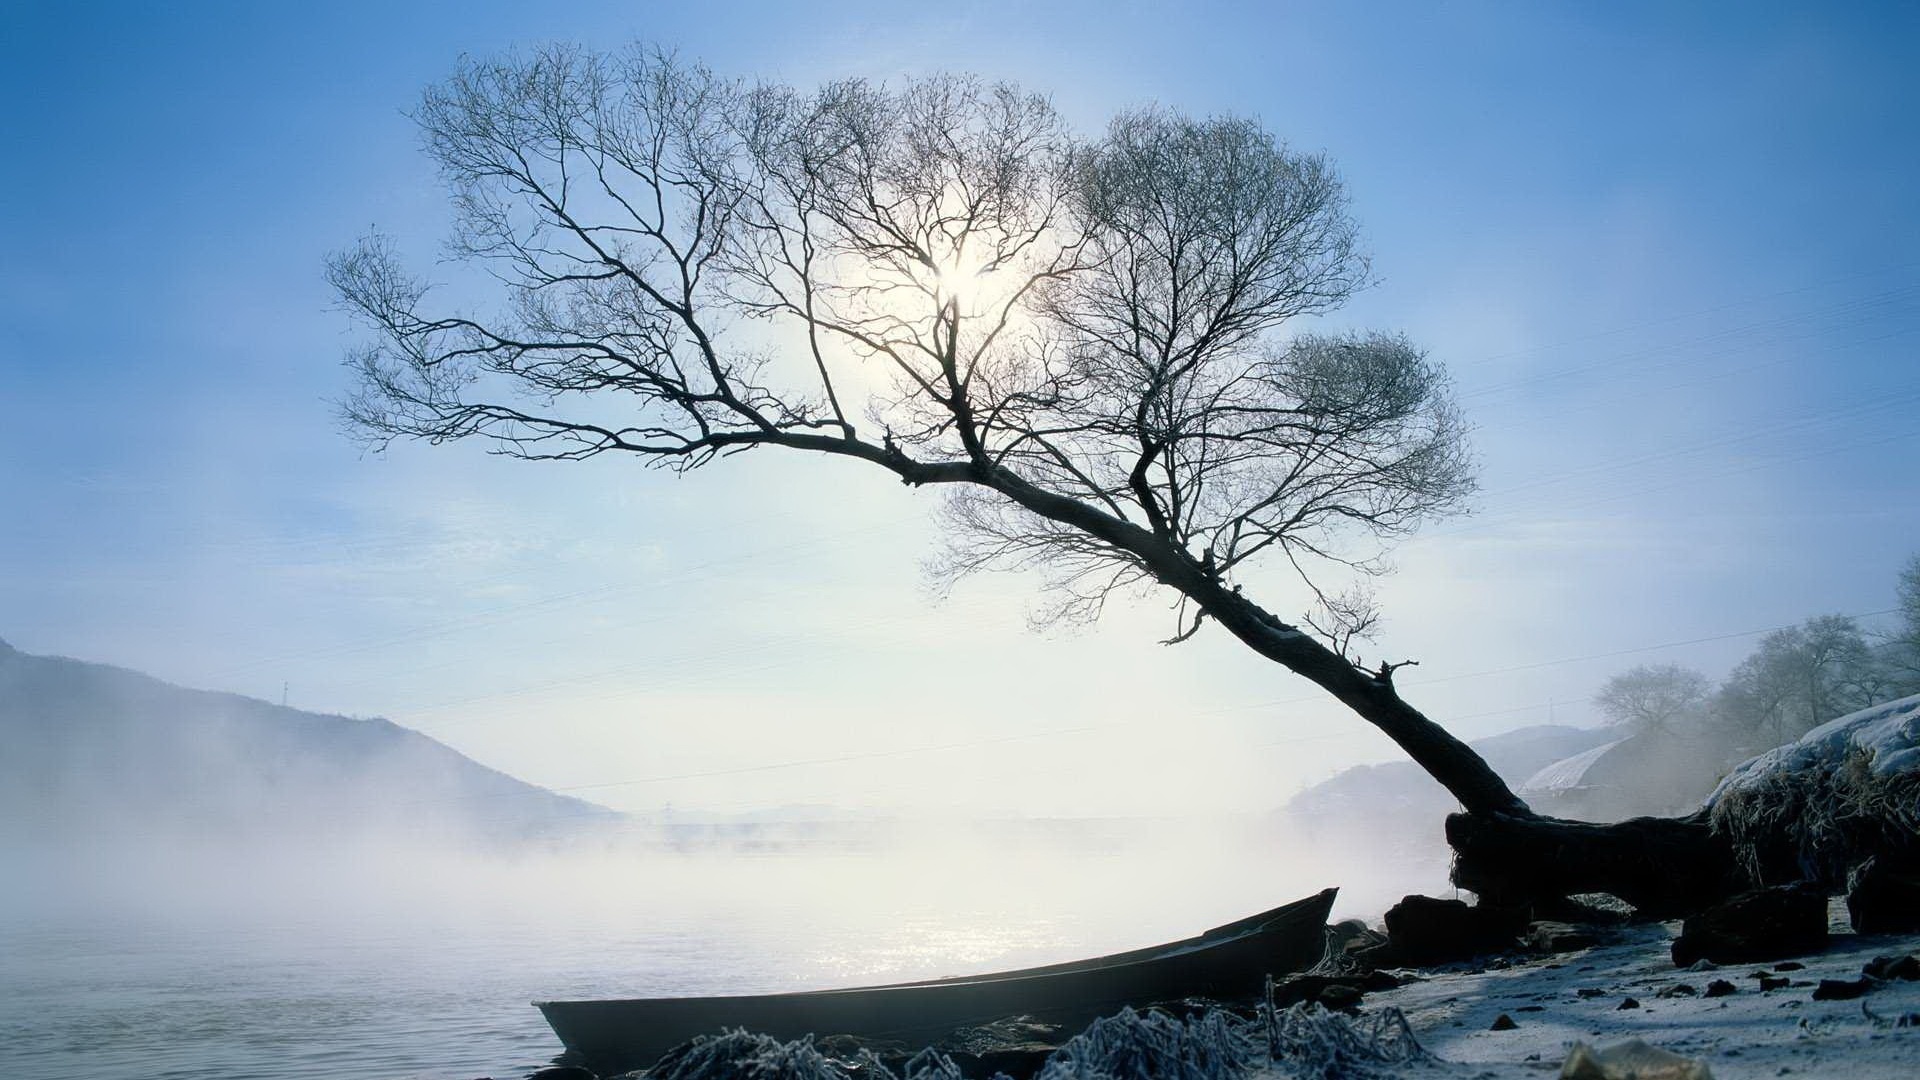 Trees in winter - Nature's Seasons Wallpaper (22173954) - Fanpop